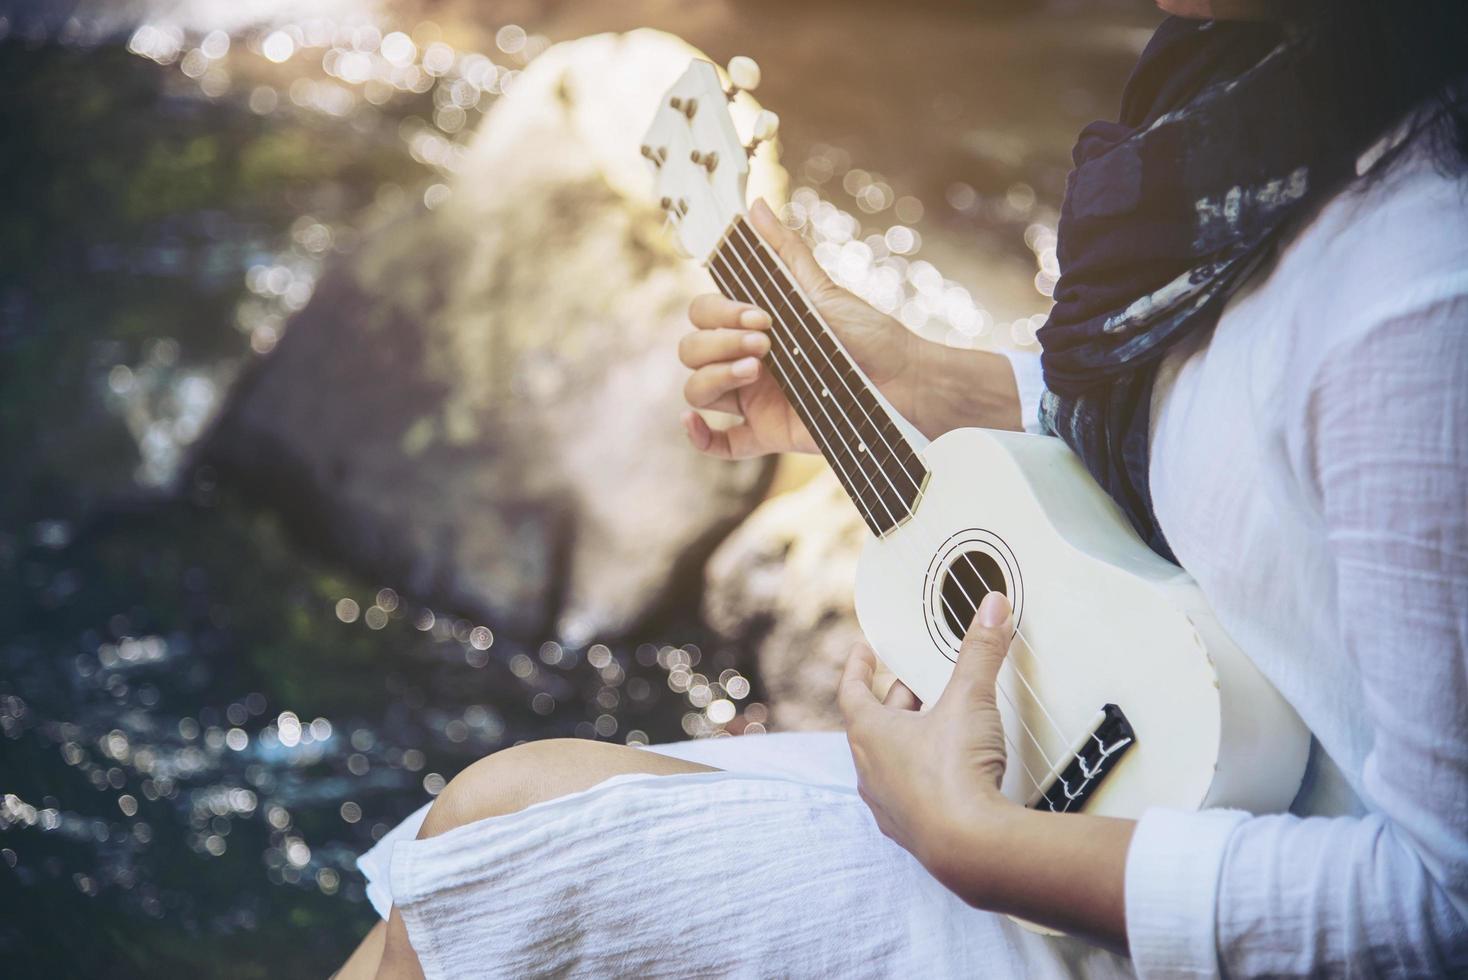 frauen spielen ukulele neu im wasserfall - lebensstil von menschen und musikinstrumenten im naturkonzept foto